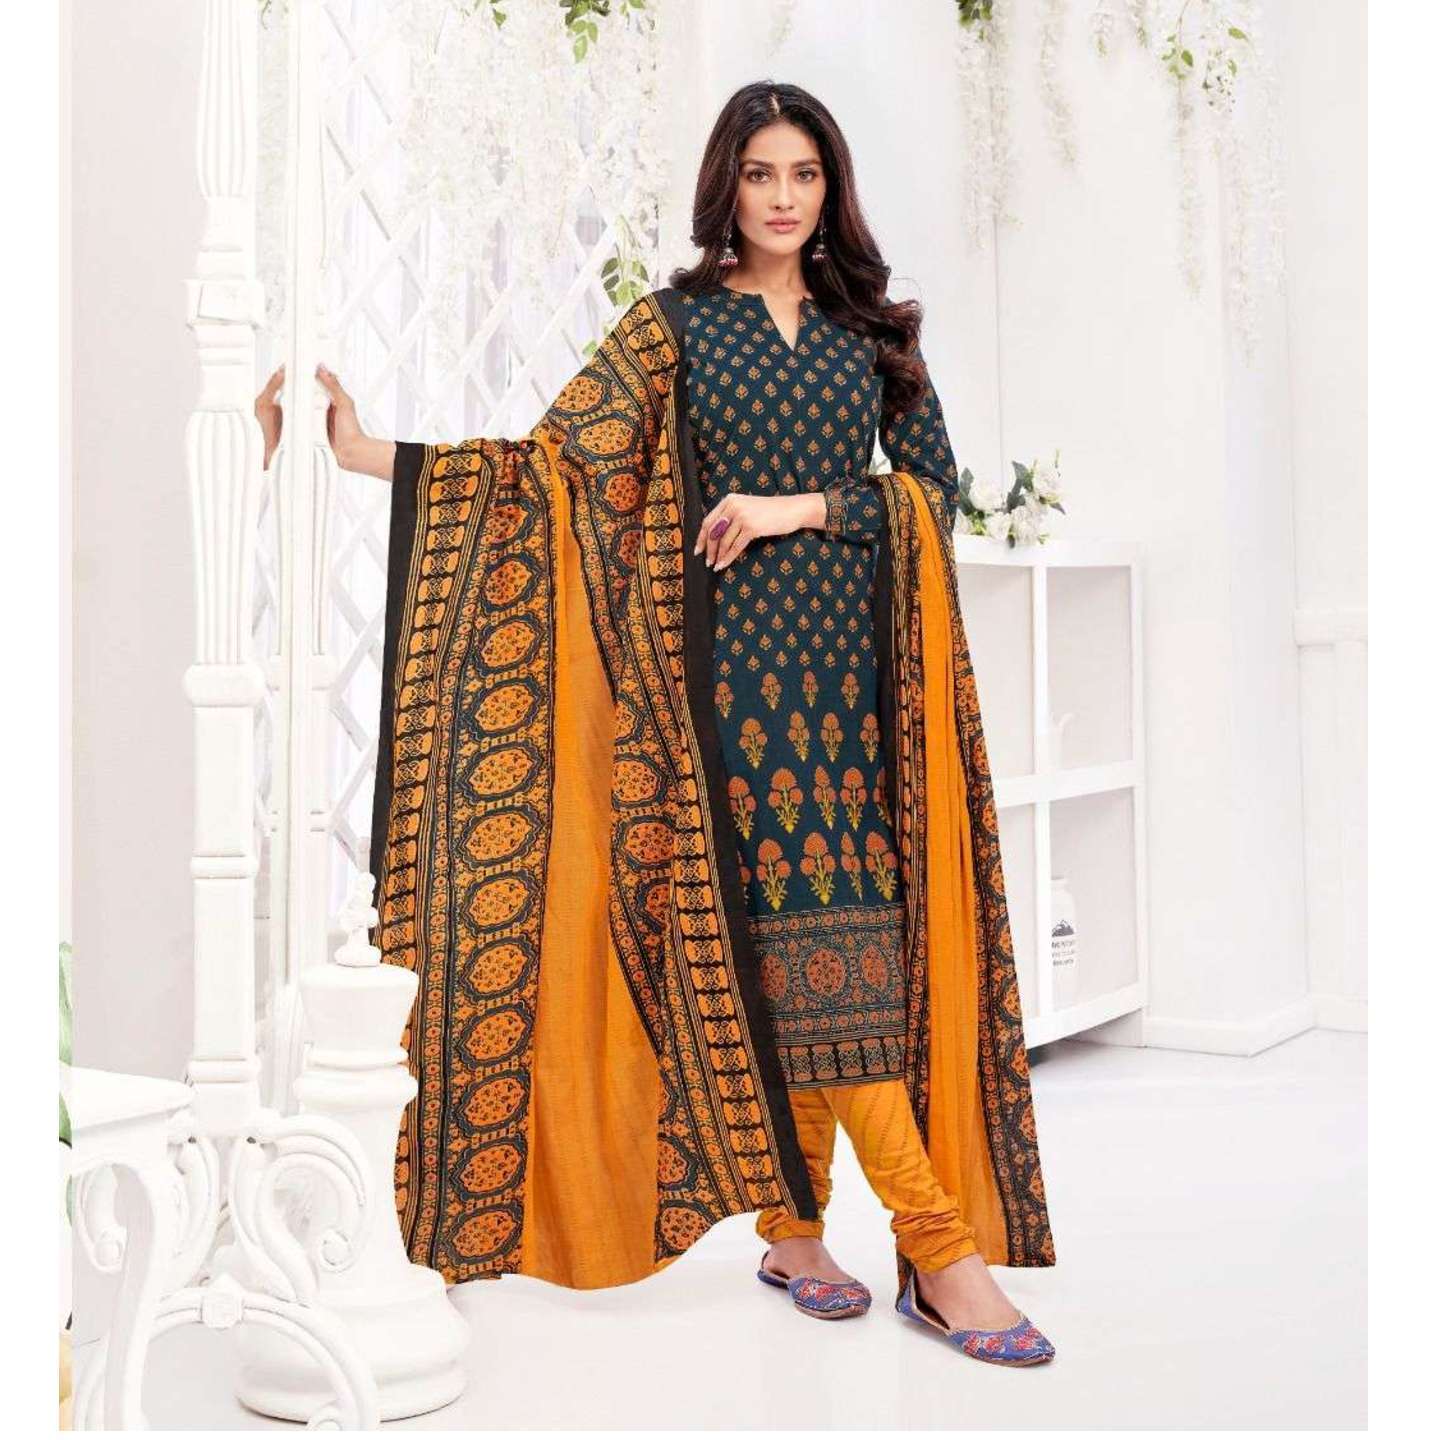 Suryajyoti Cotton Printed Dress Material 5115